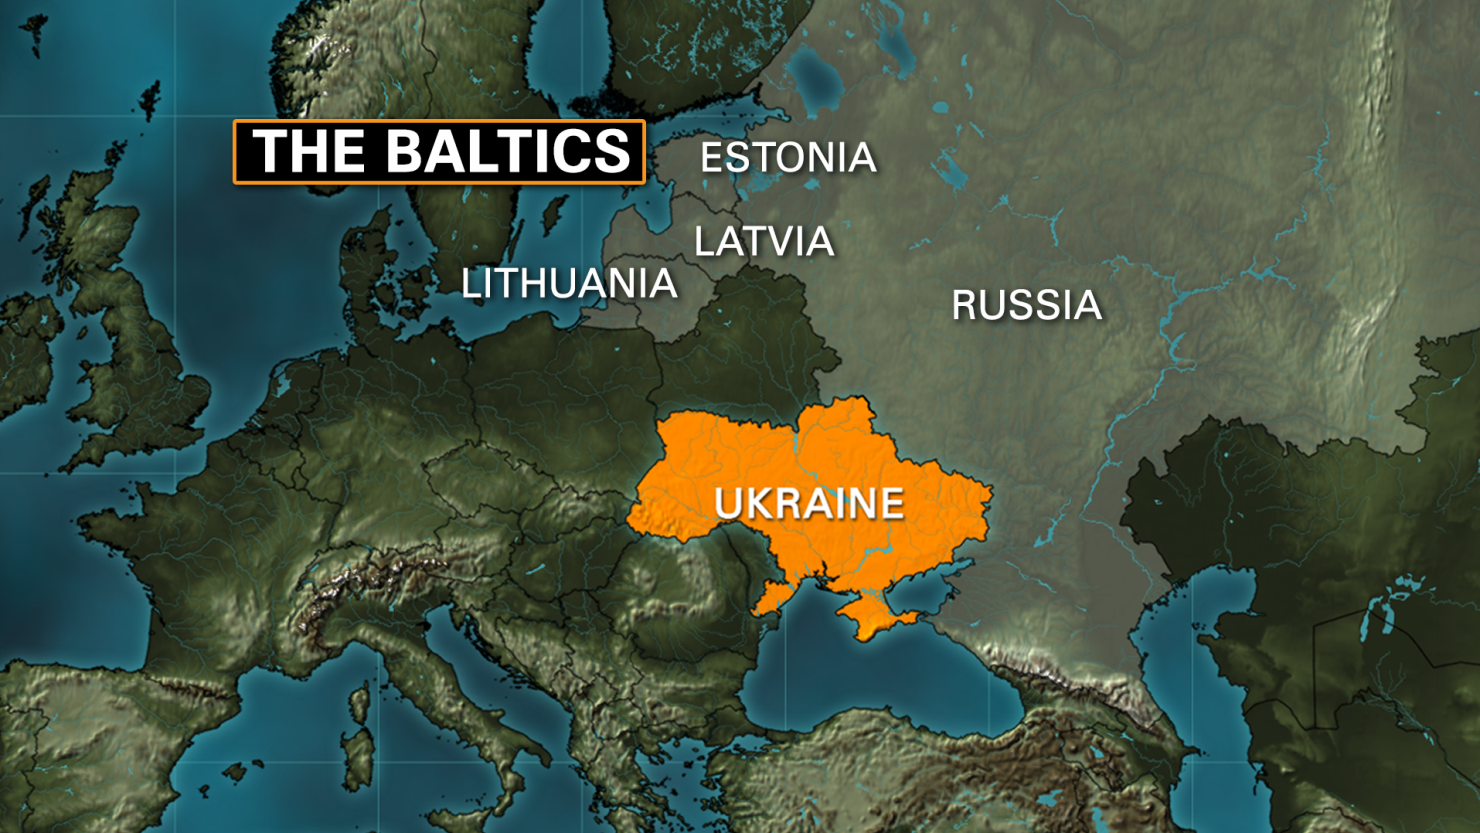 https://cnnsotu.files.wordpress.com/2014/03/baltic-map.png